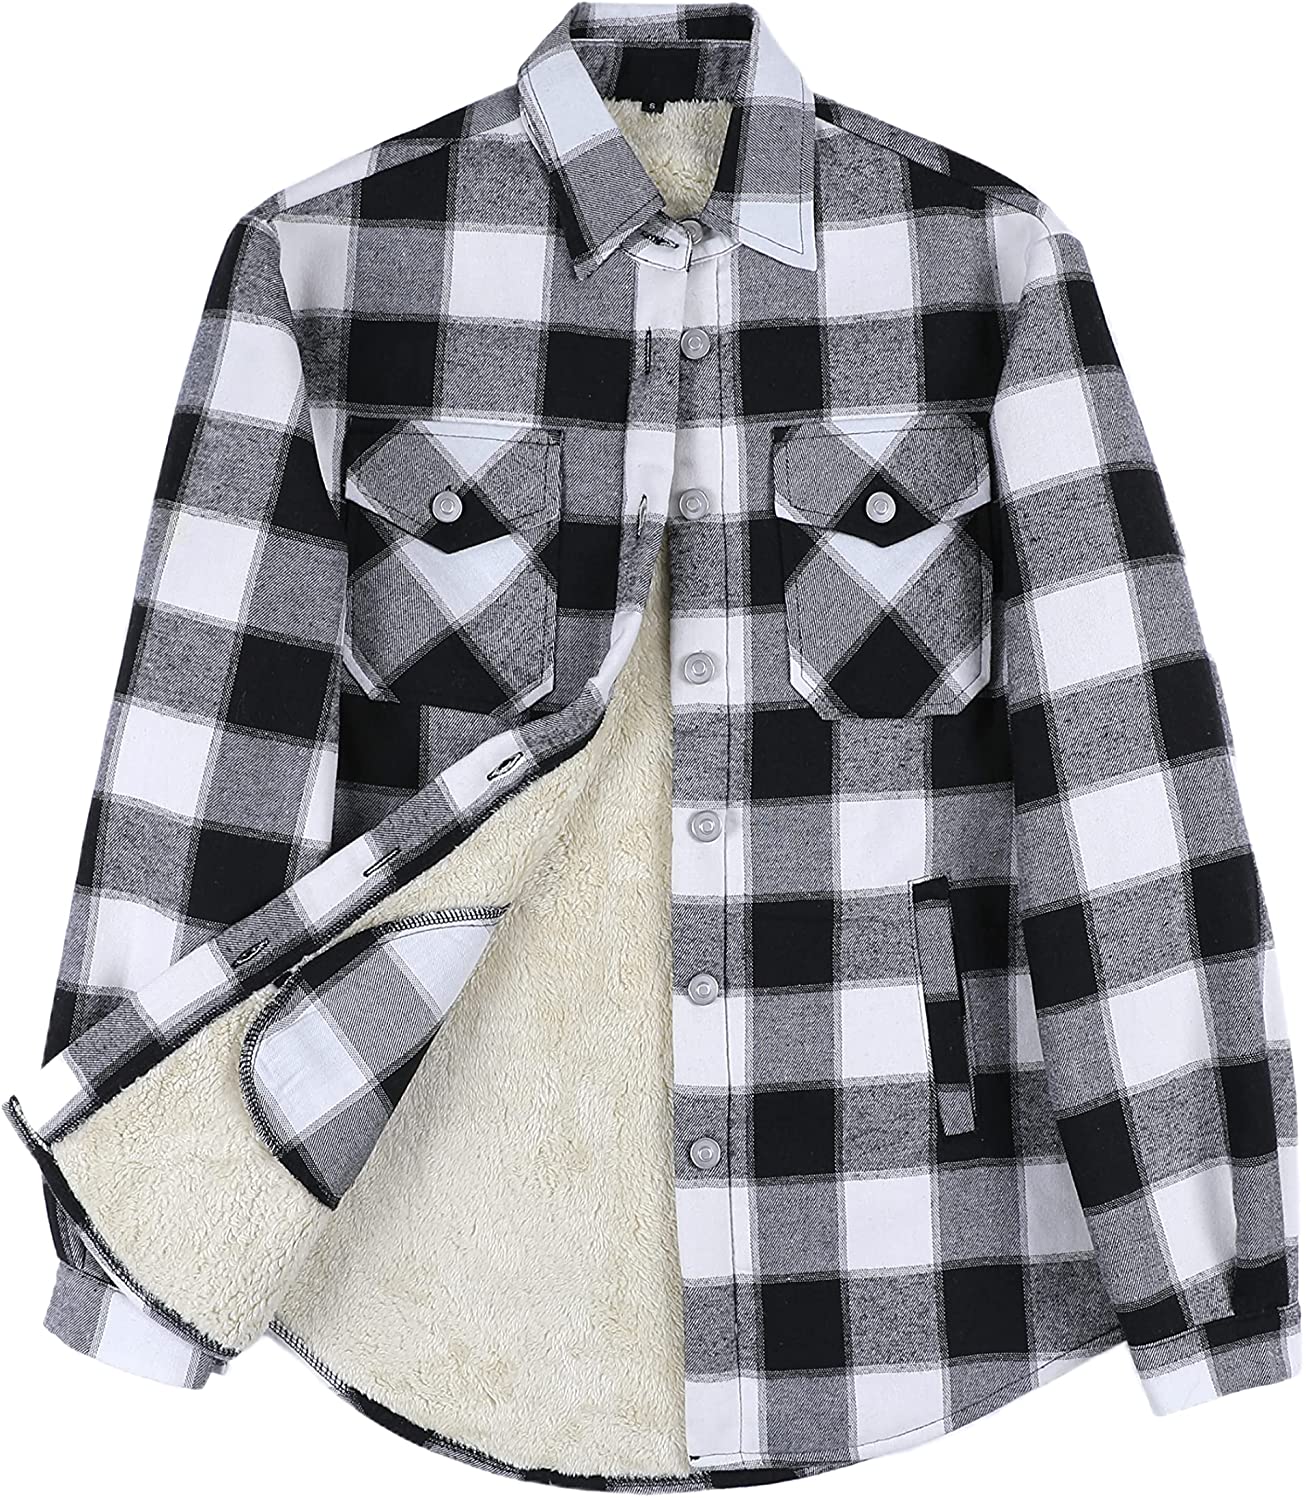 Yeokou Women's Casual Winter Warm Sherpa Lined Zip Up Hooded Sweatshirt  Jacket C | eBay